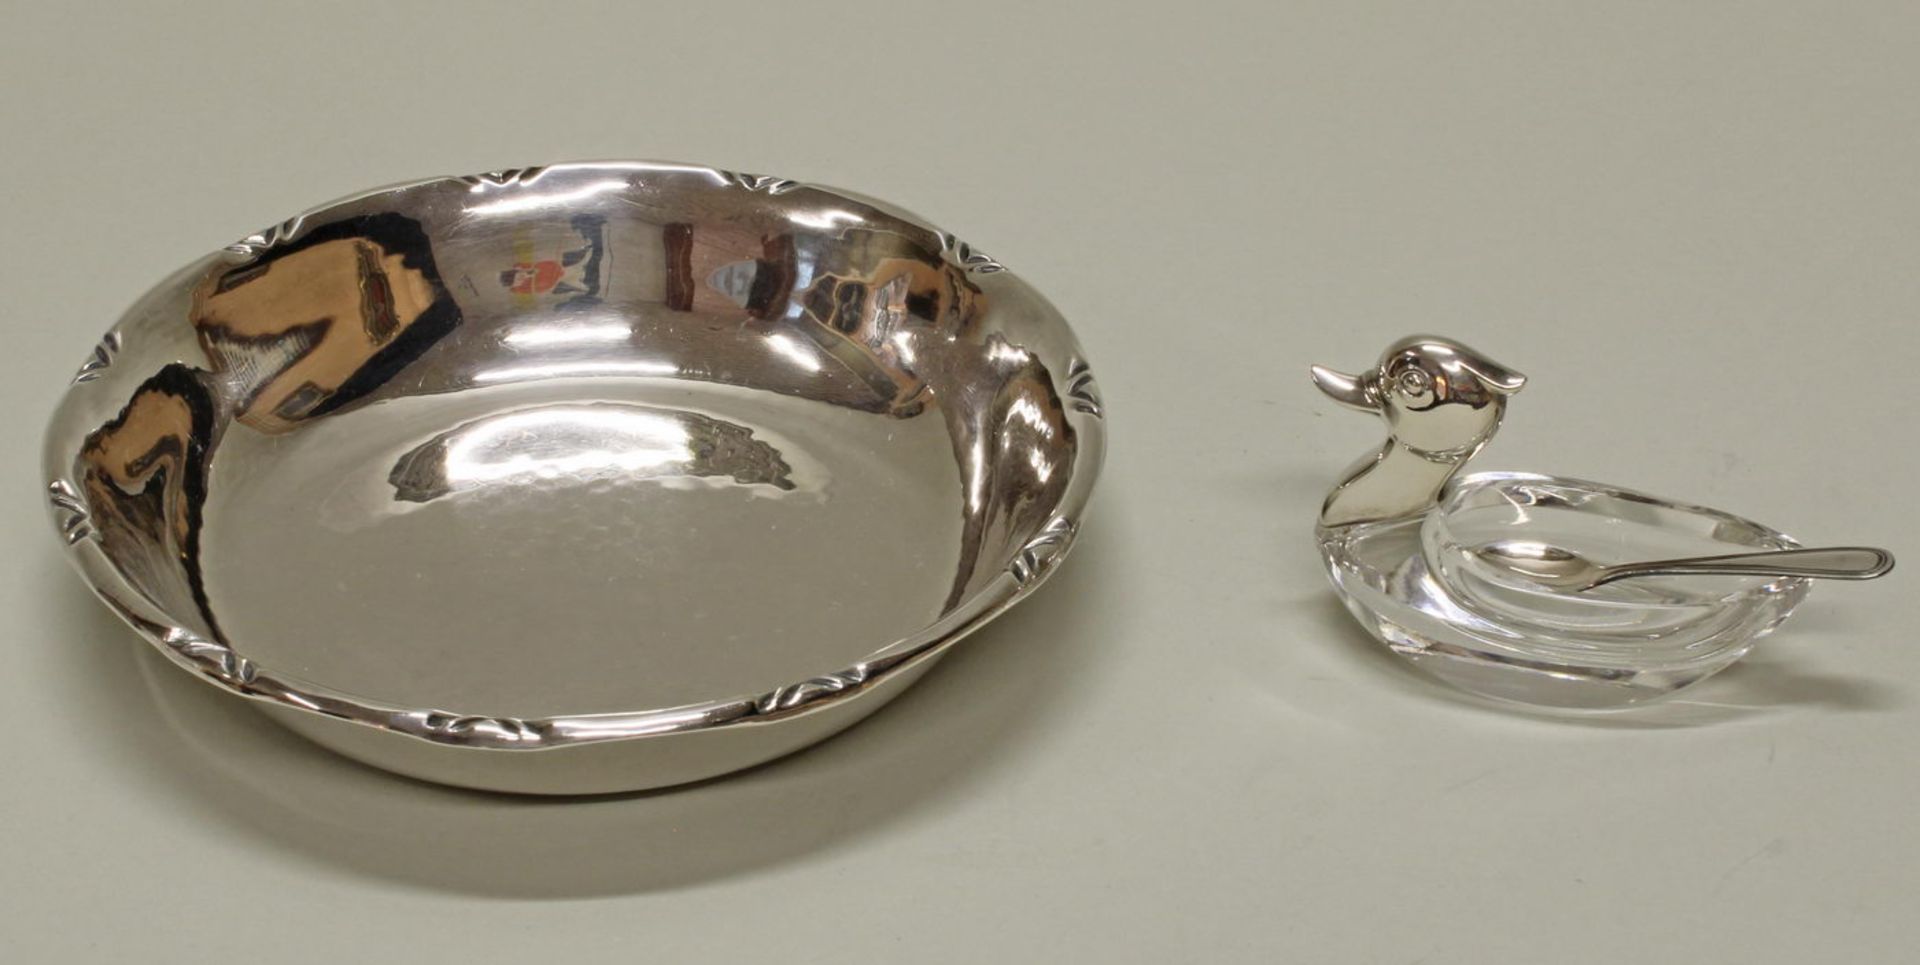 Gewürzschälchen, "Ente" mit Löffelchen, Silber 835, Korpus aus Kristallglas, 5 cm hoch; Schälch